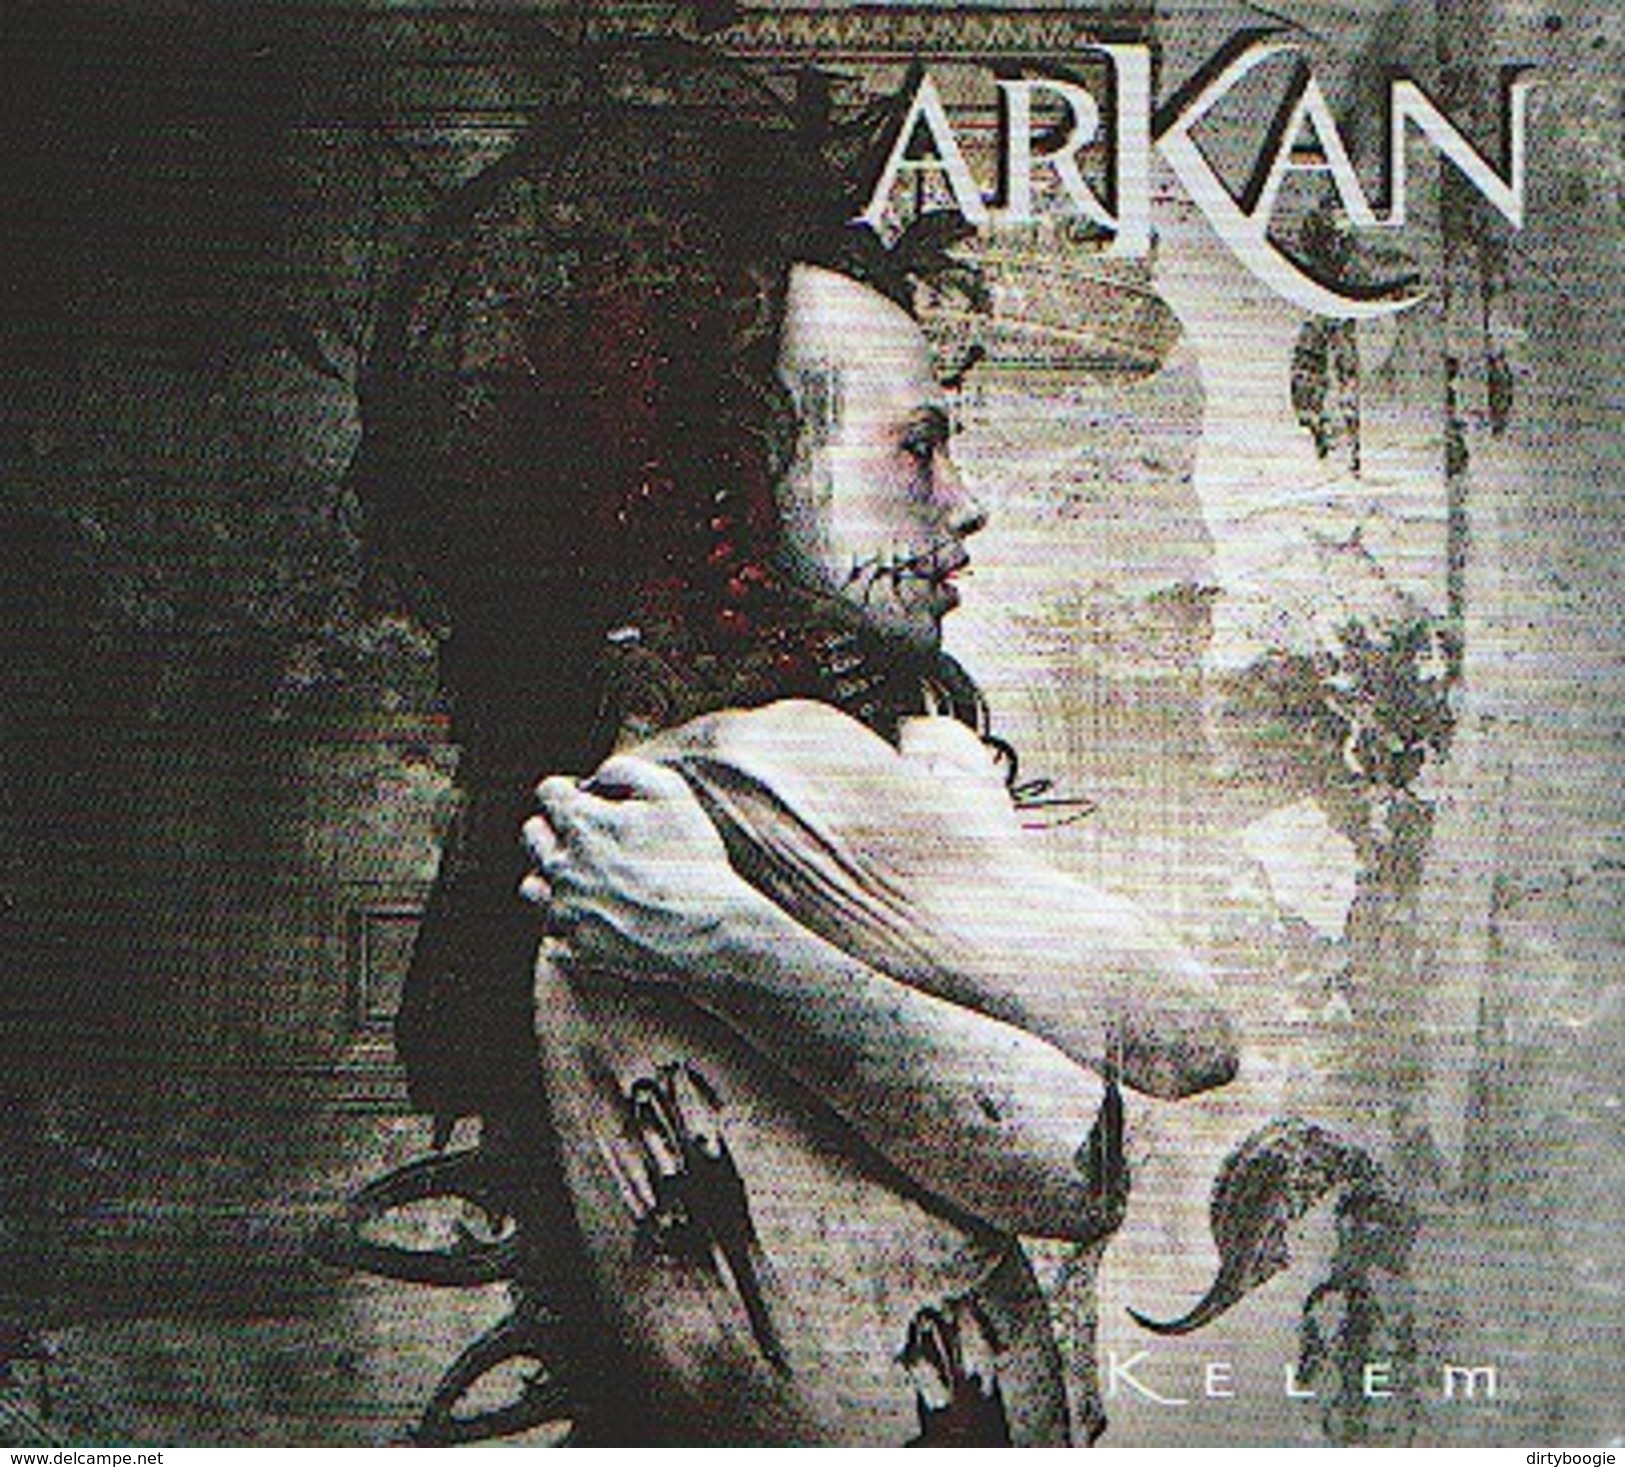 ARKAN - Kelem - CD - METAL ORIENTAL - Hard Rock En Metal